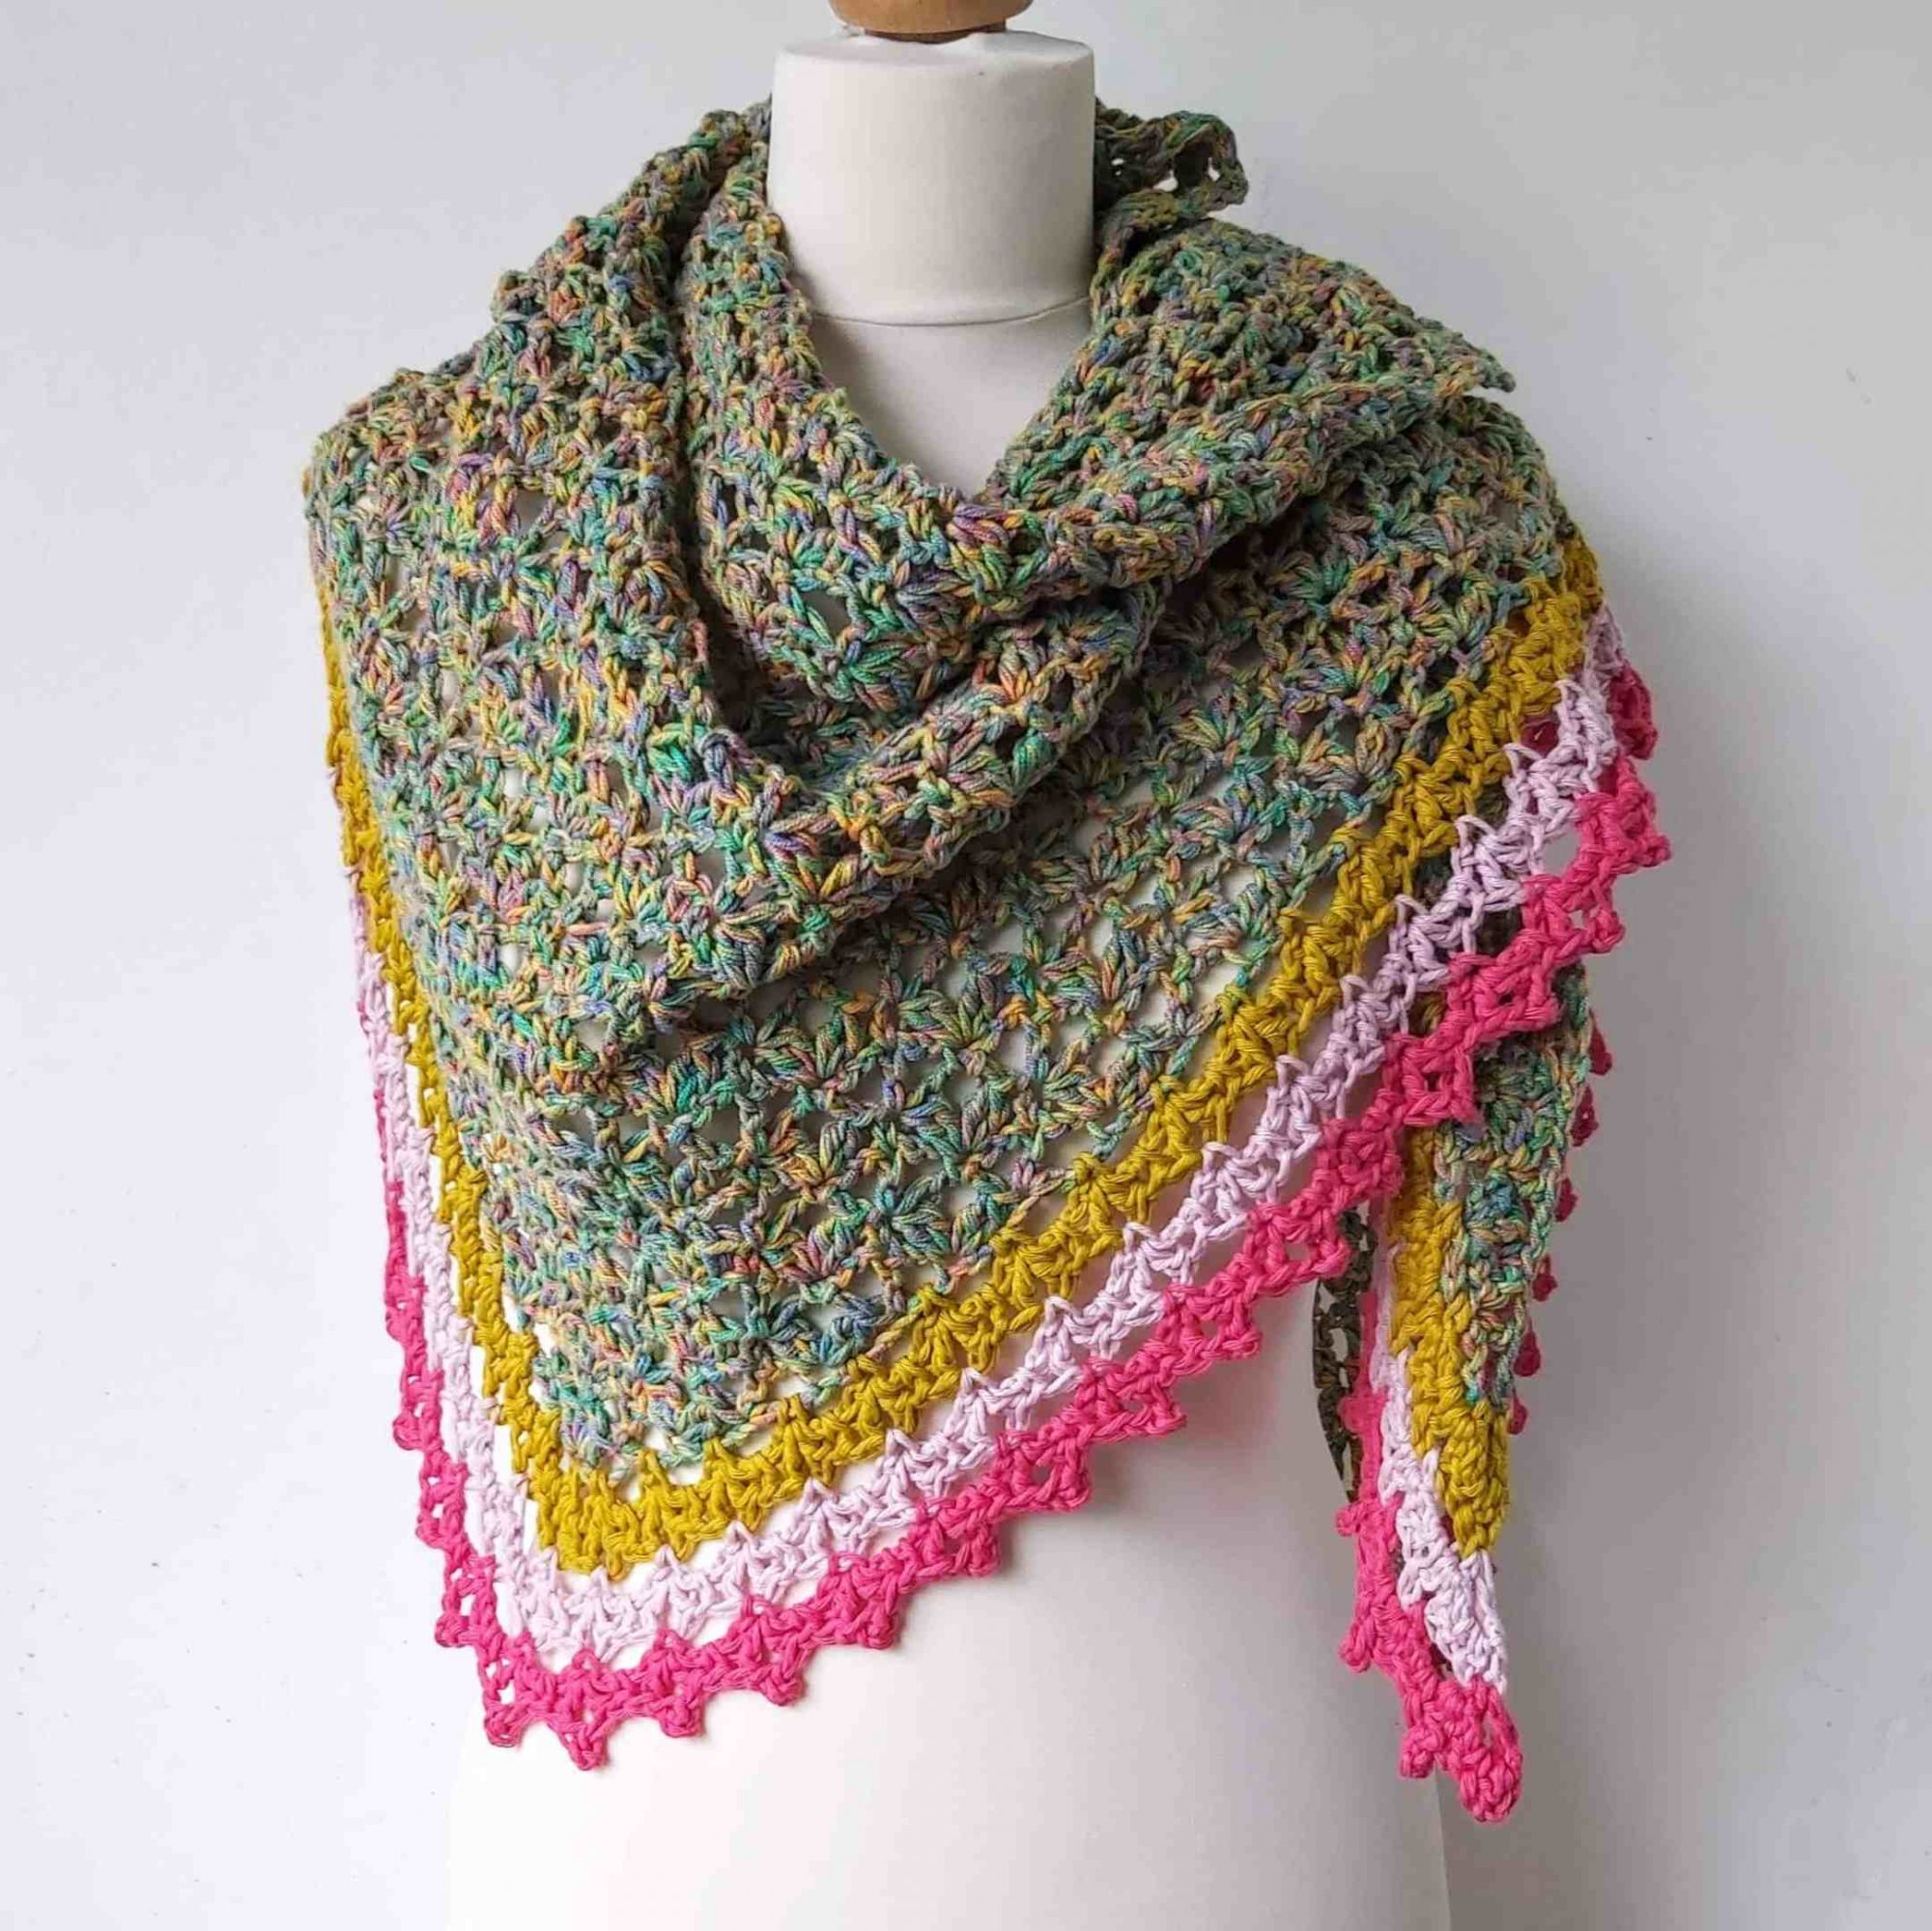 Crochet shawl free pattern